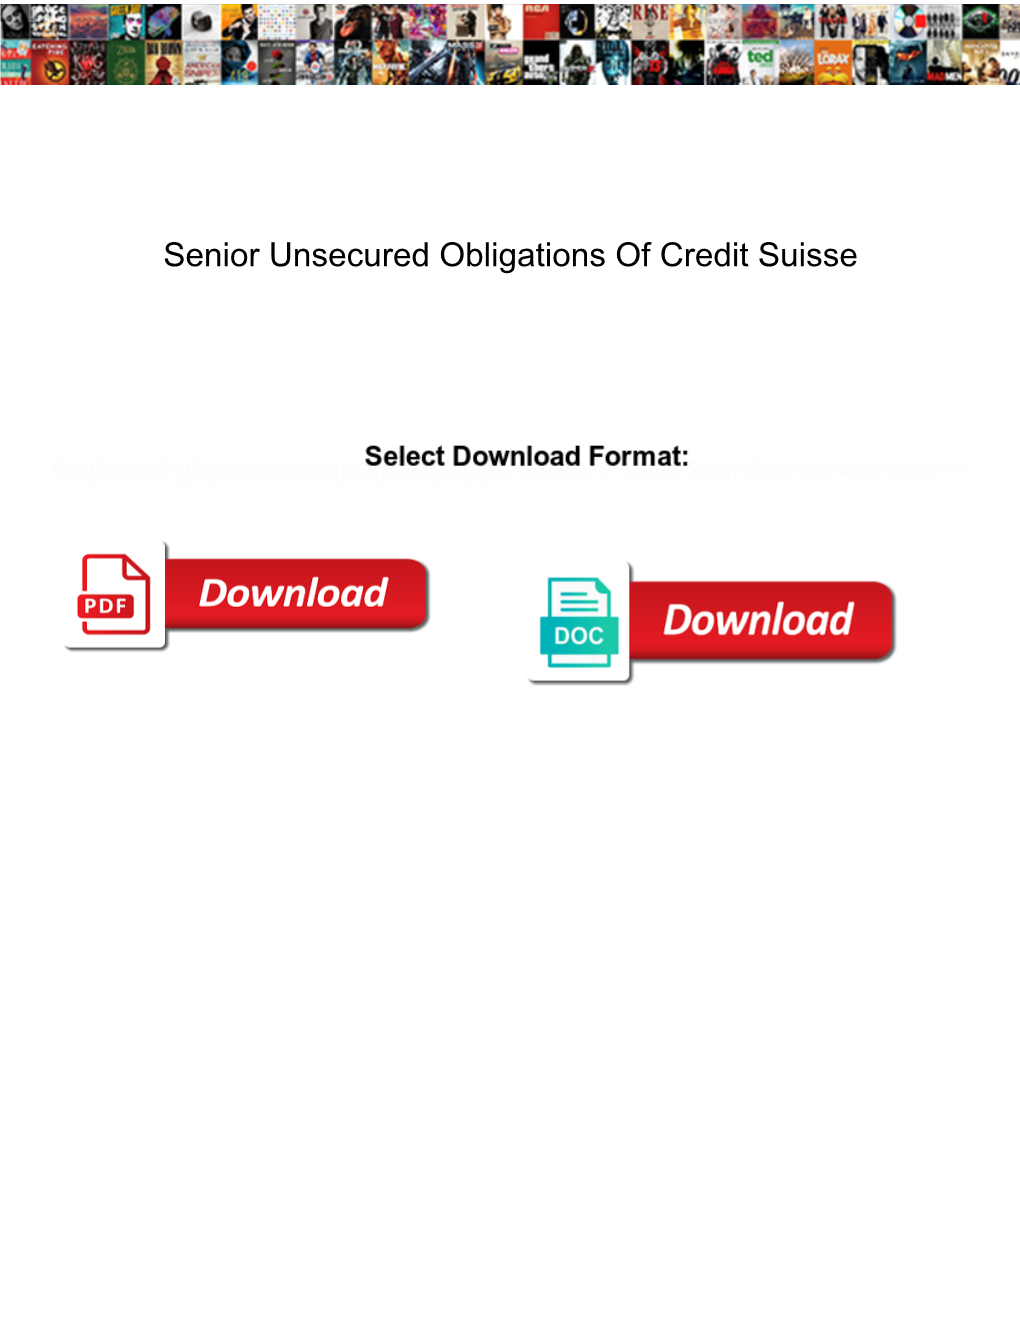 Senior Unsecured Obligations of Credit Suisse